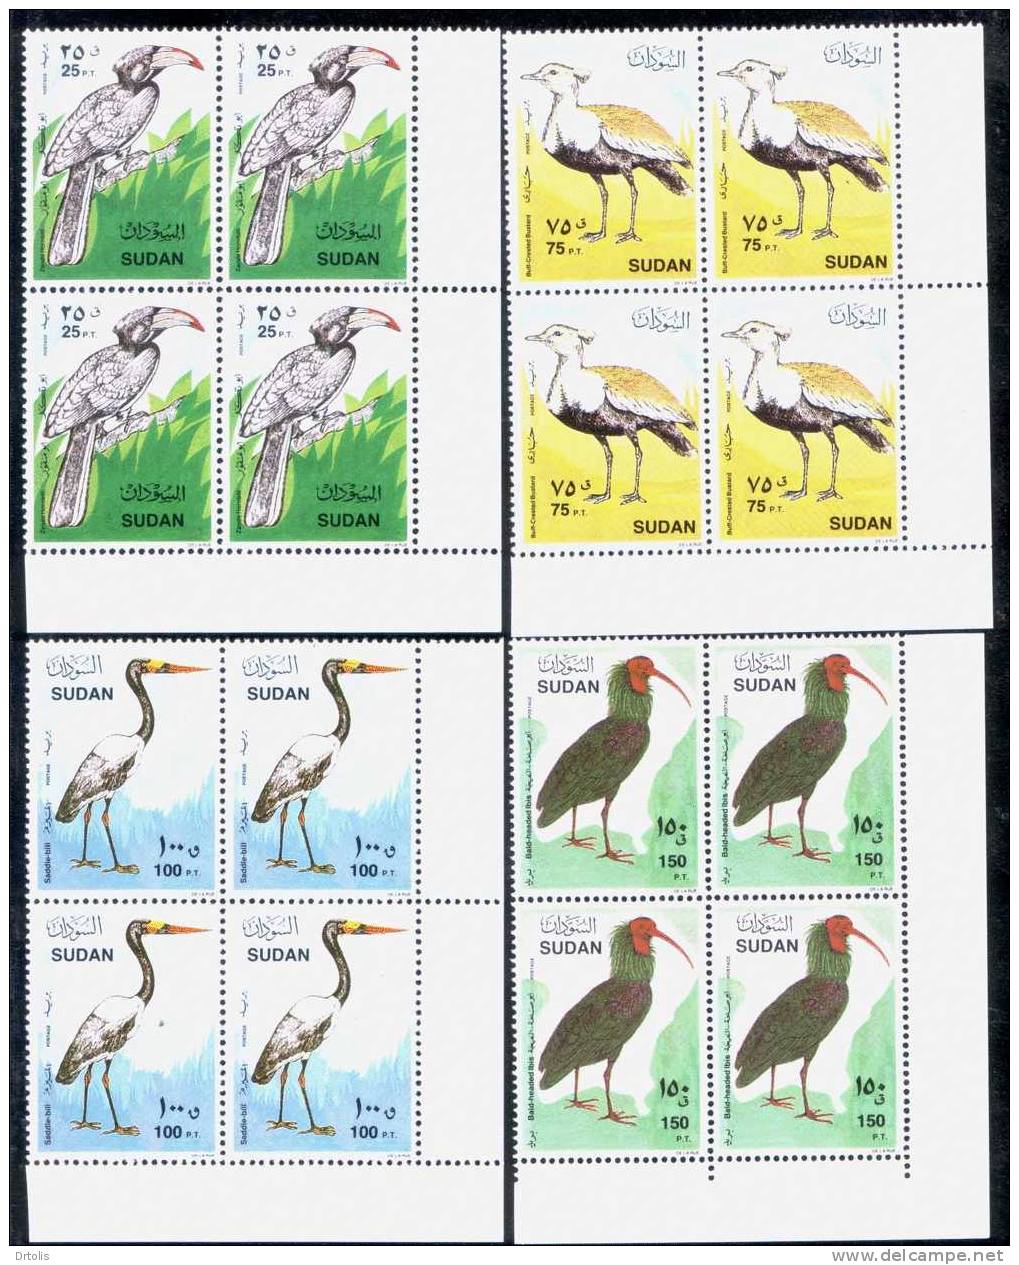 SUDAN 1990 / BIRDS / MNH / VF/ 5 SCANS. - Soedan (1954-...)